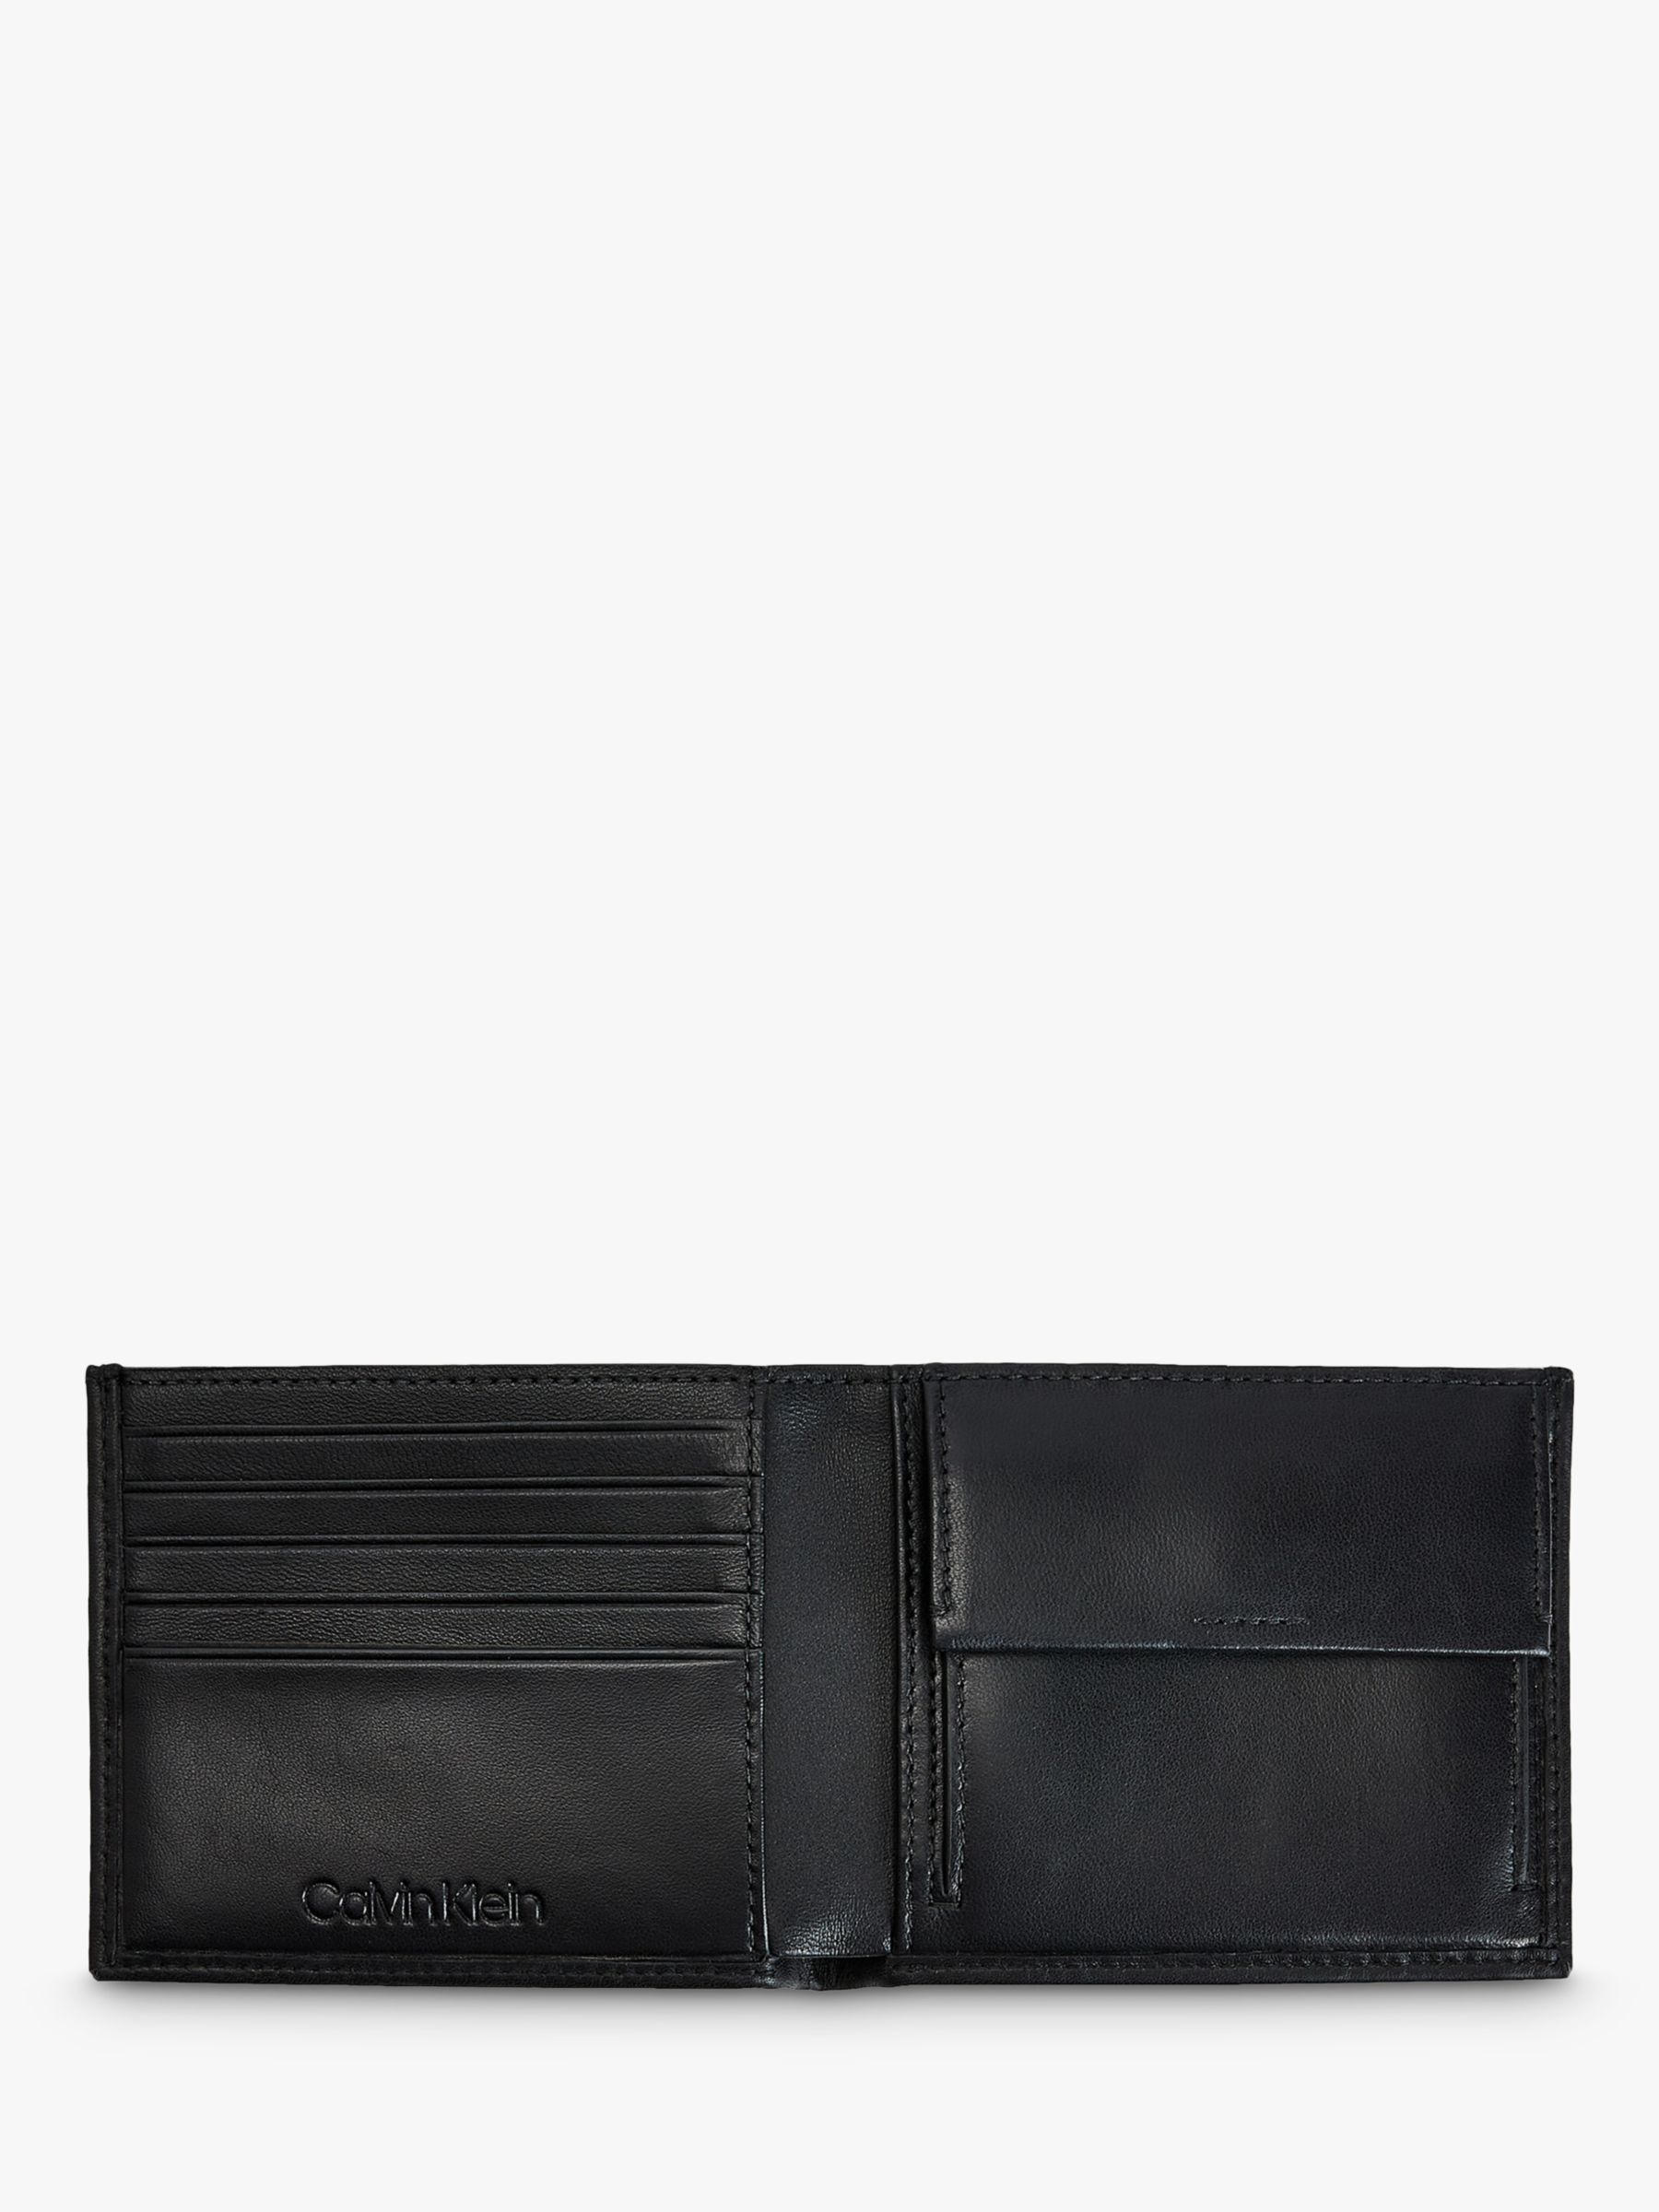 Calvin Klein RFID Blocking Leather Billfold Wallet, Black at John Lewis ...